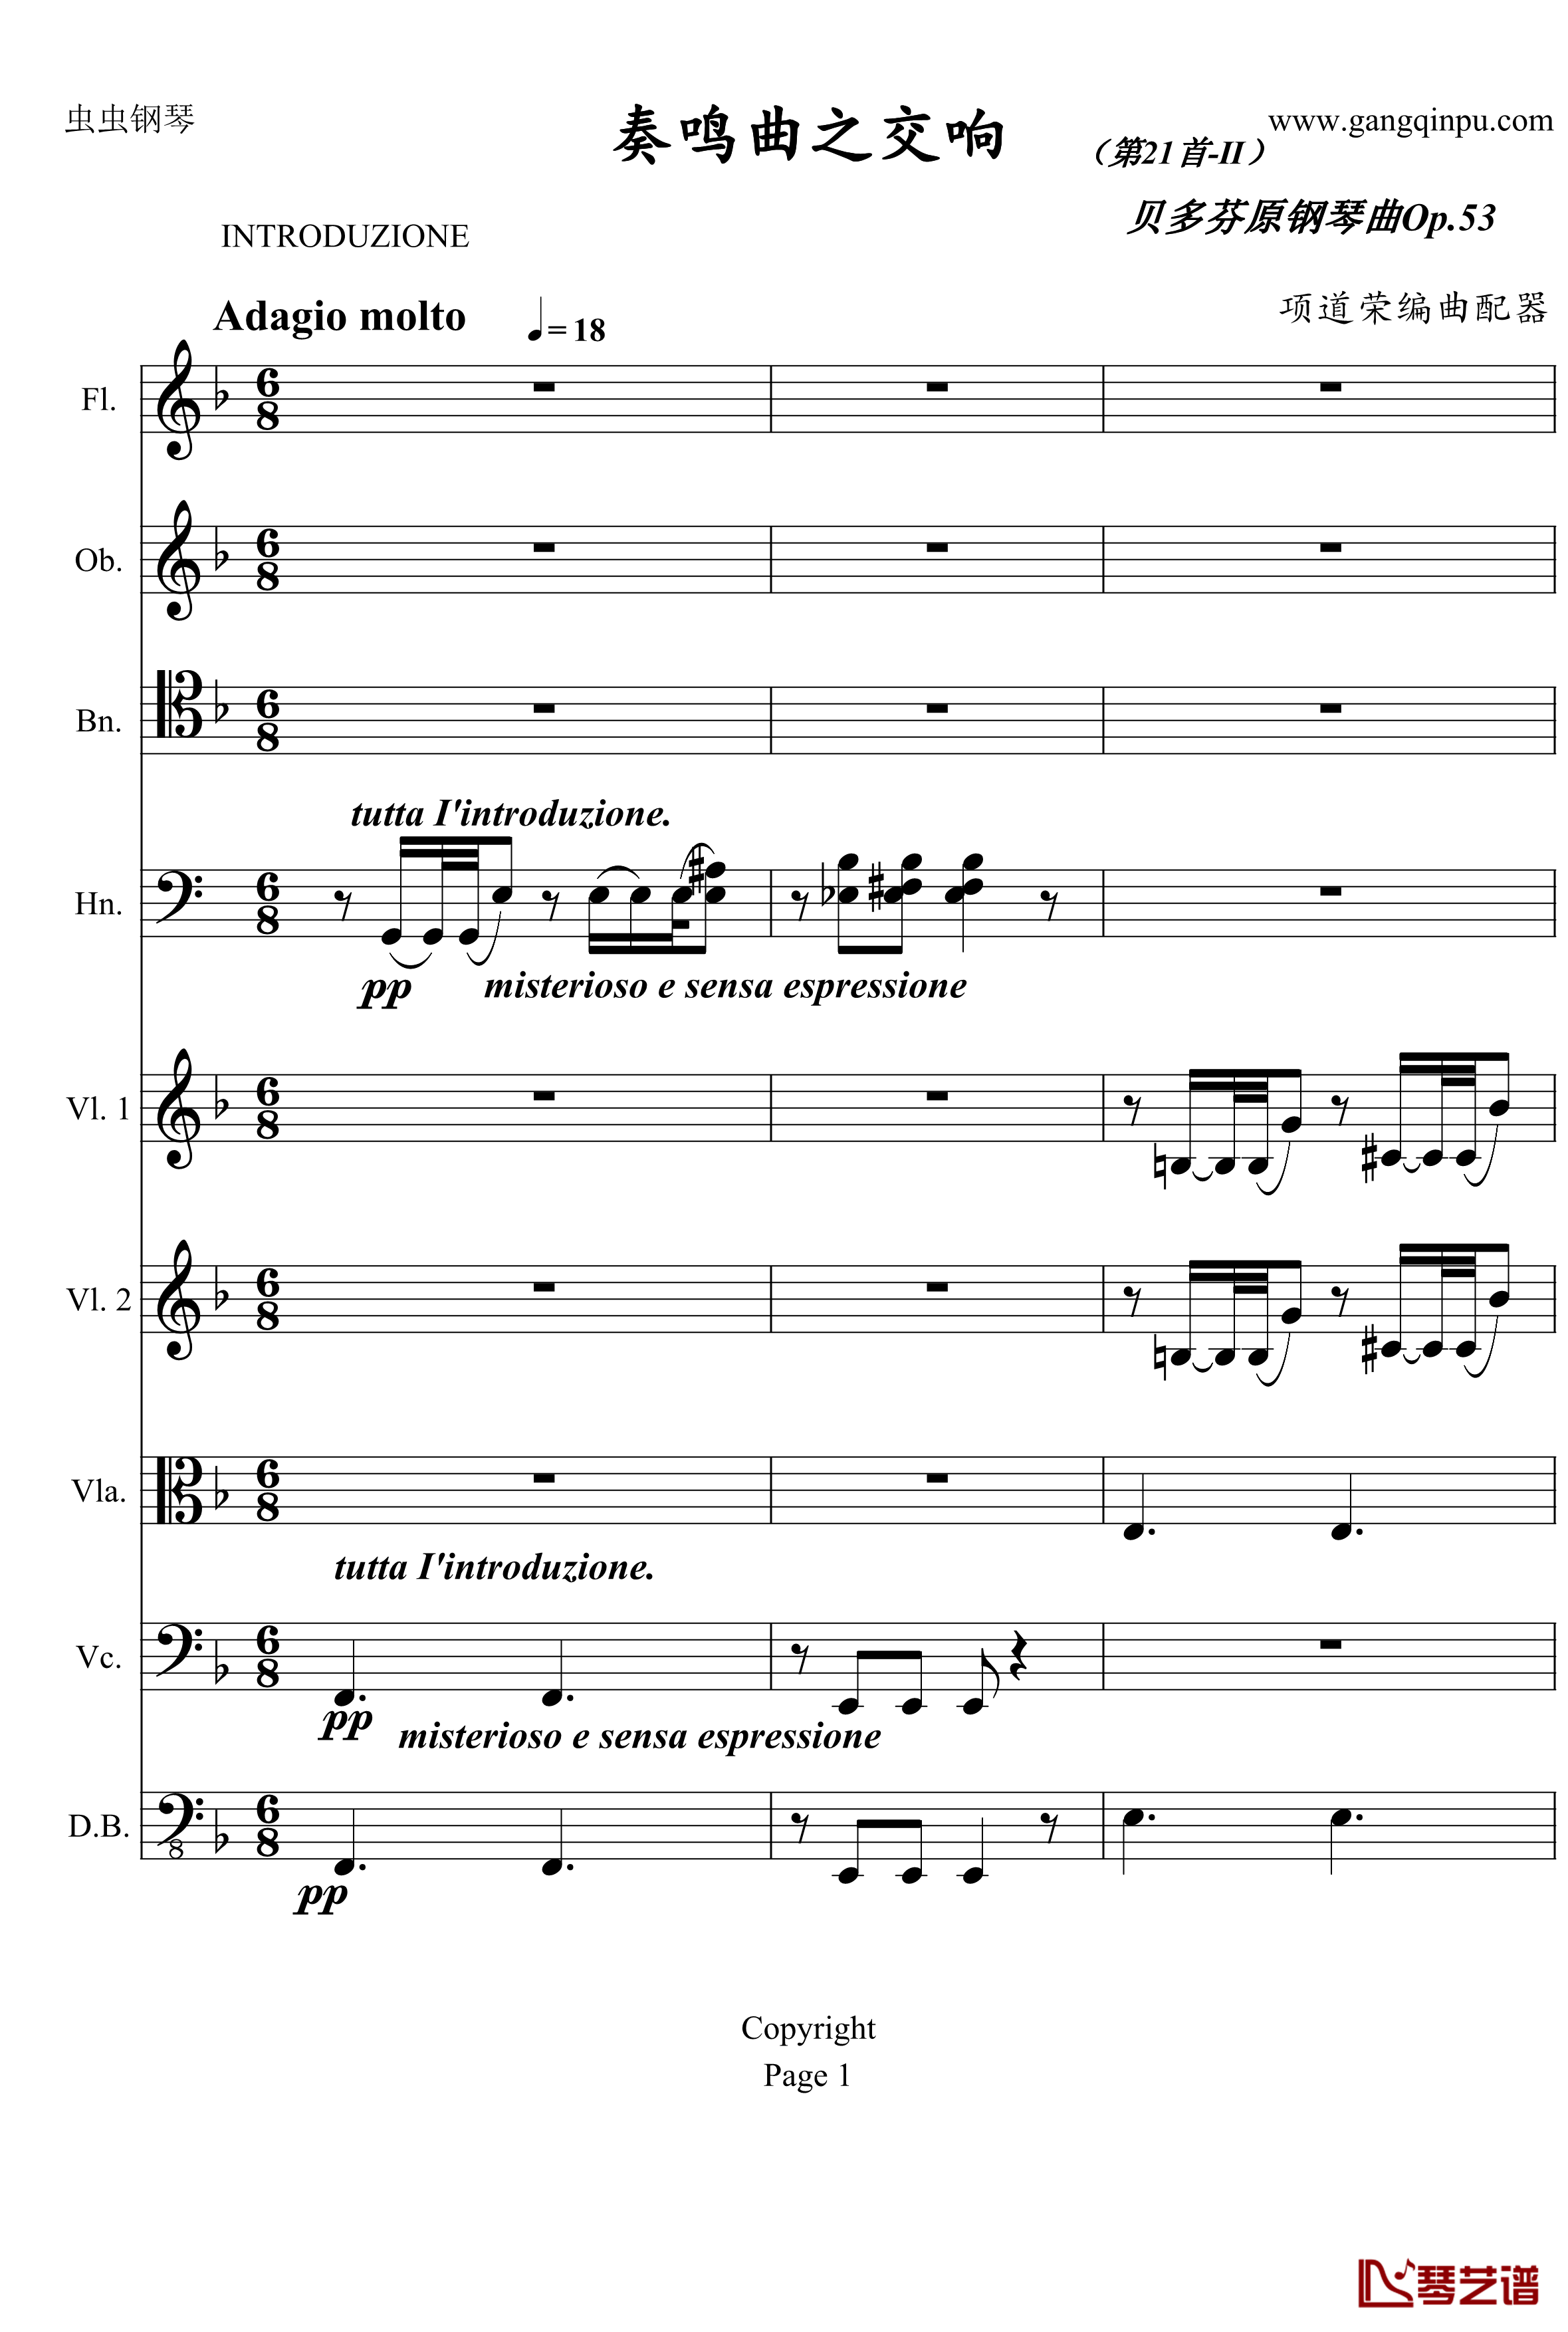 奏鸣曲之交响钢琴谱-第21-Ⅱ-贝多芬-beethoven1